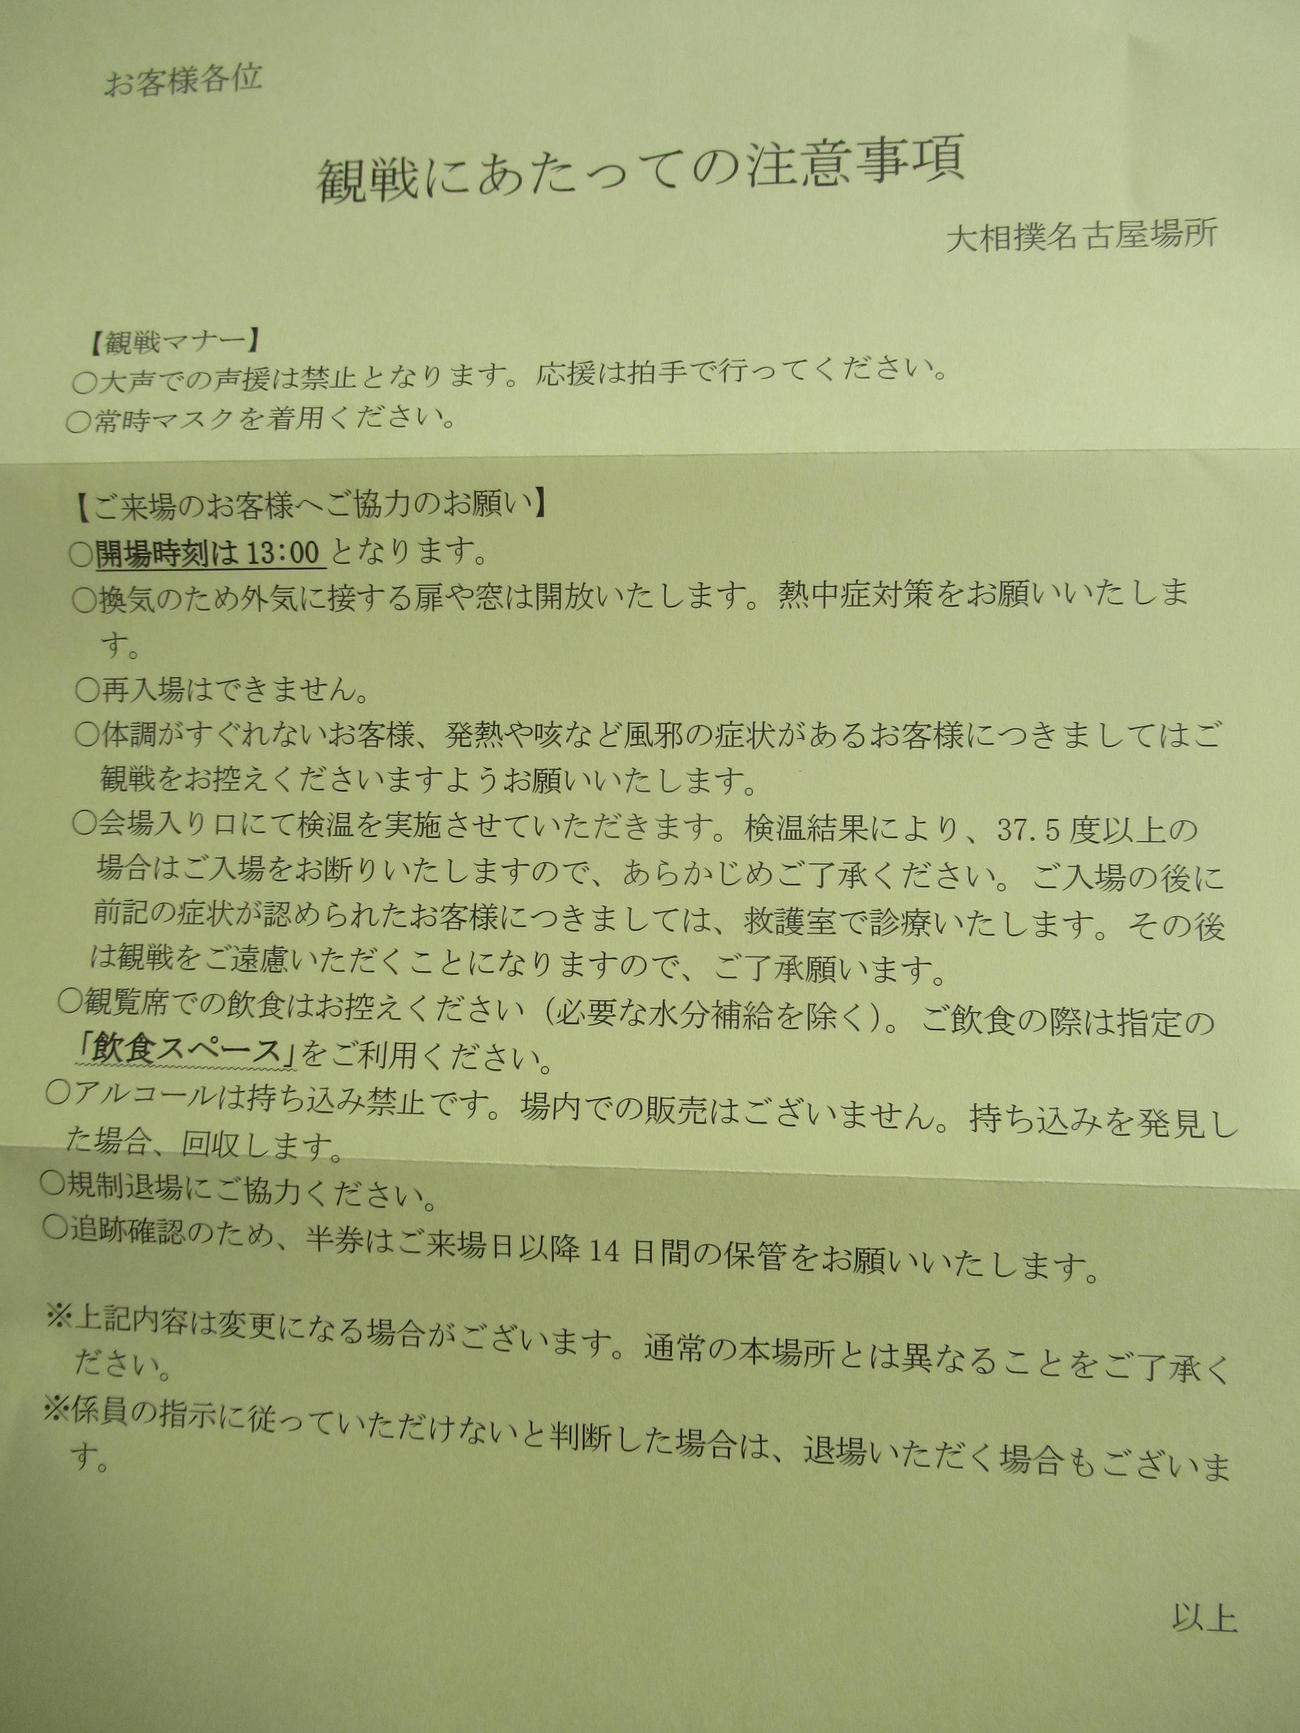 名古屋場所開催にあたり協会が観客に配布する注意書き